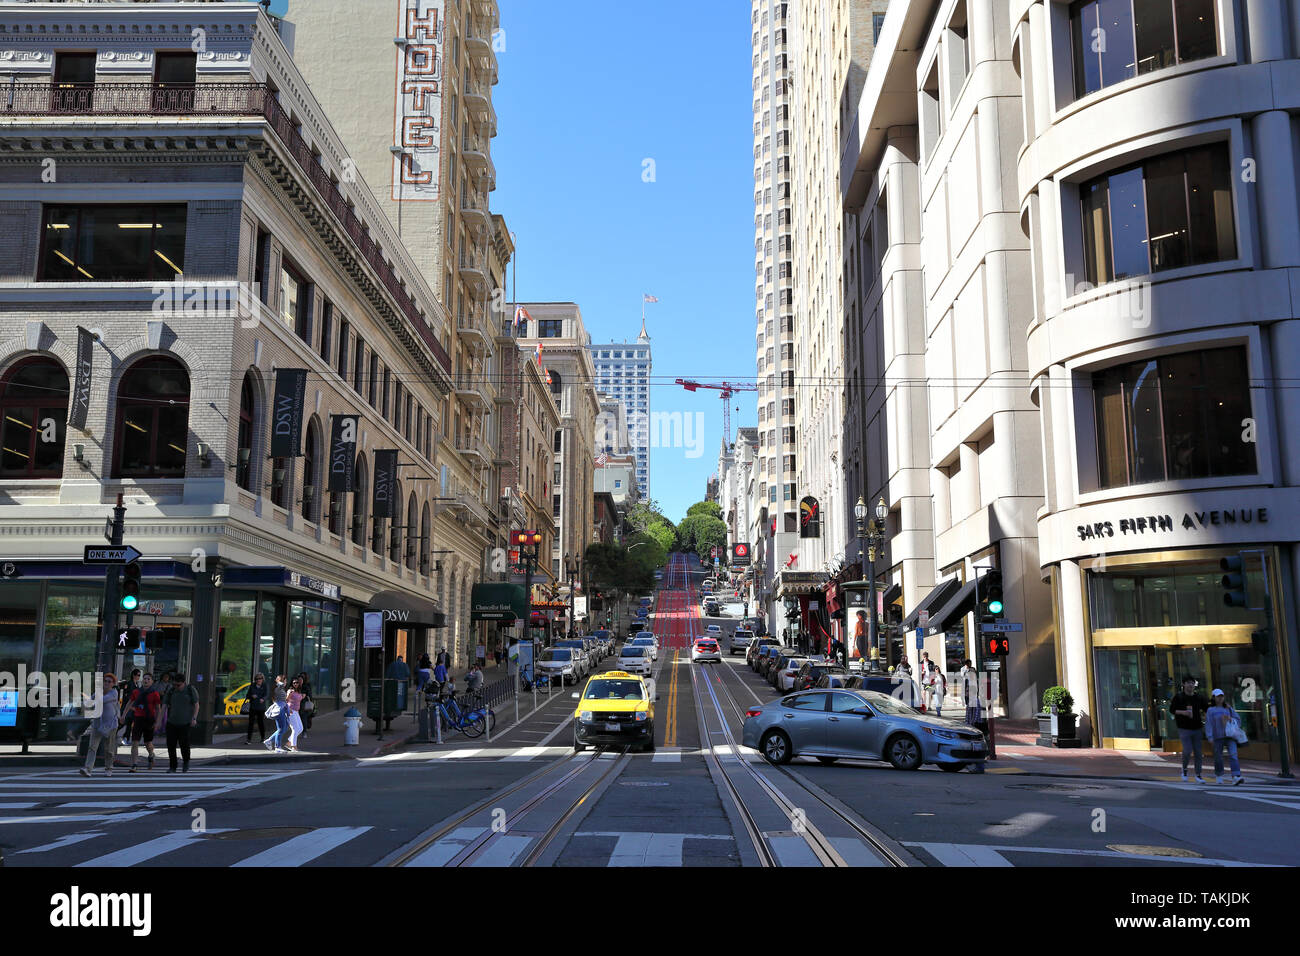 Immagine Editoriale San Francisco 22/04/2019: Powell Street Downtown area nei pressi di Union Square, una grande attrazione turistica. Foto Stock